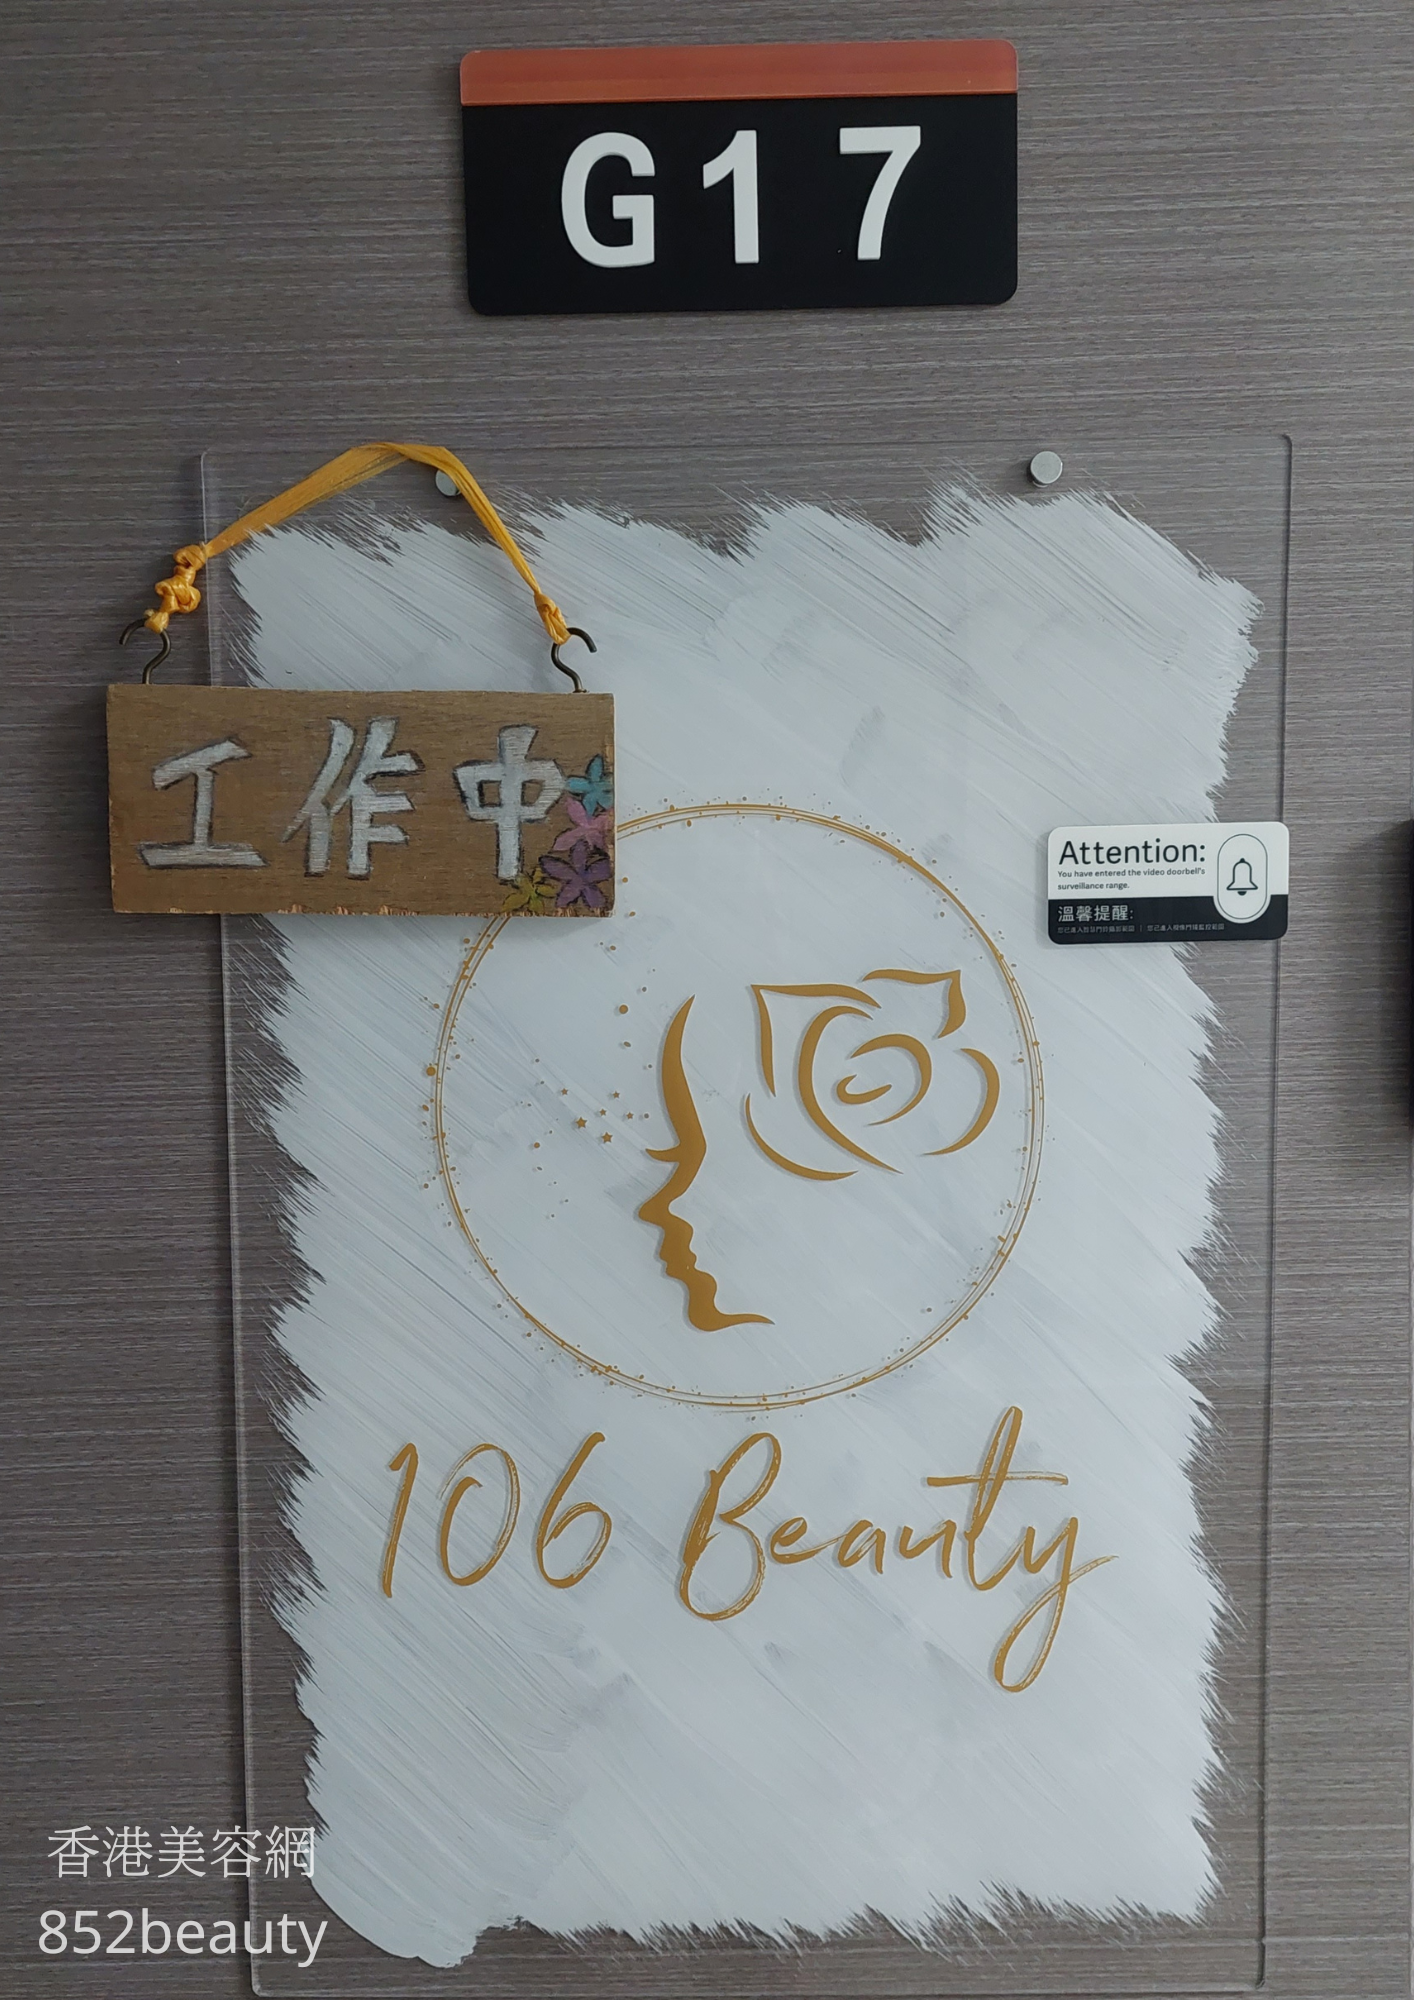 眼部护理: 106 Beauty